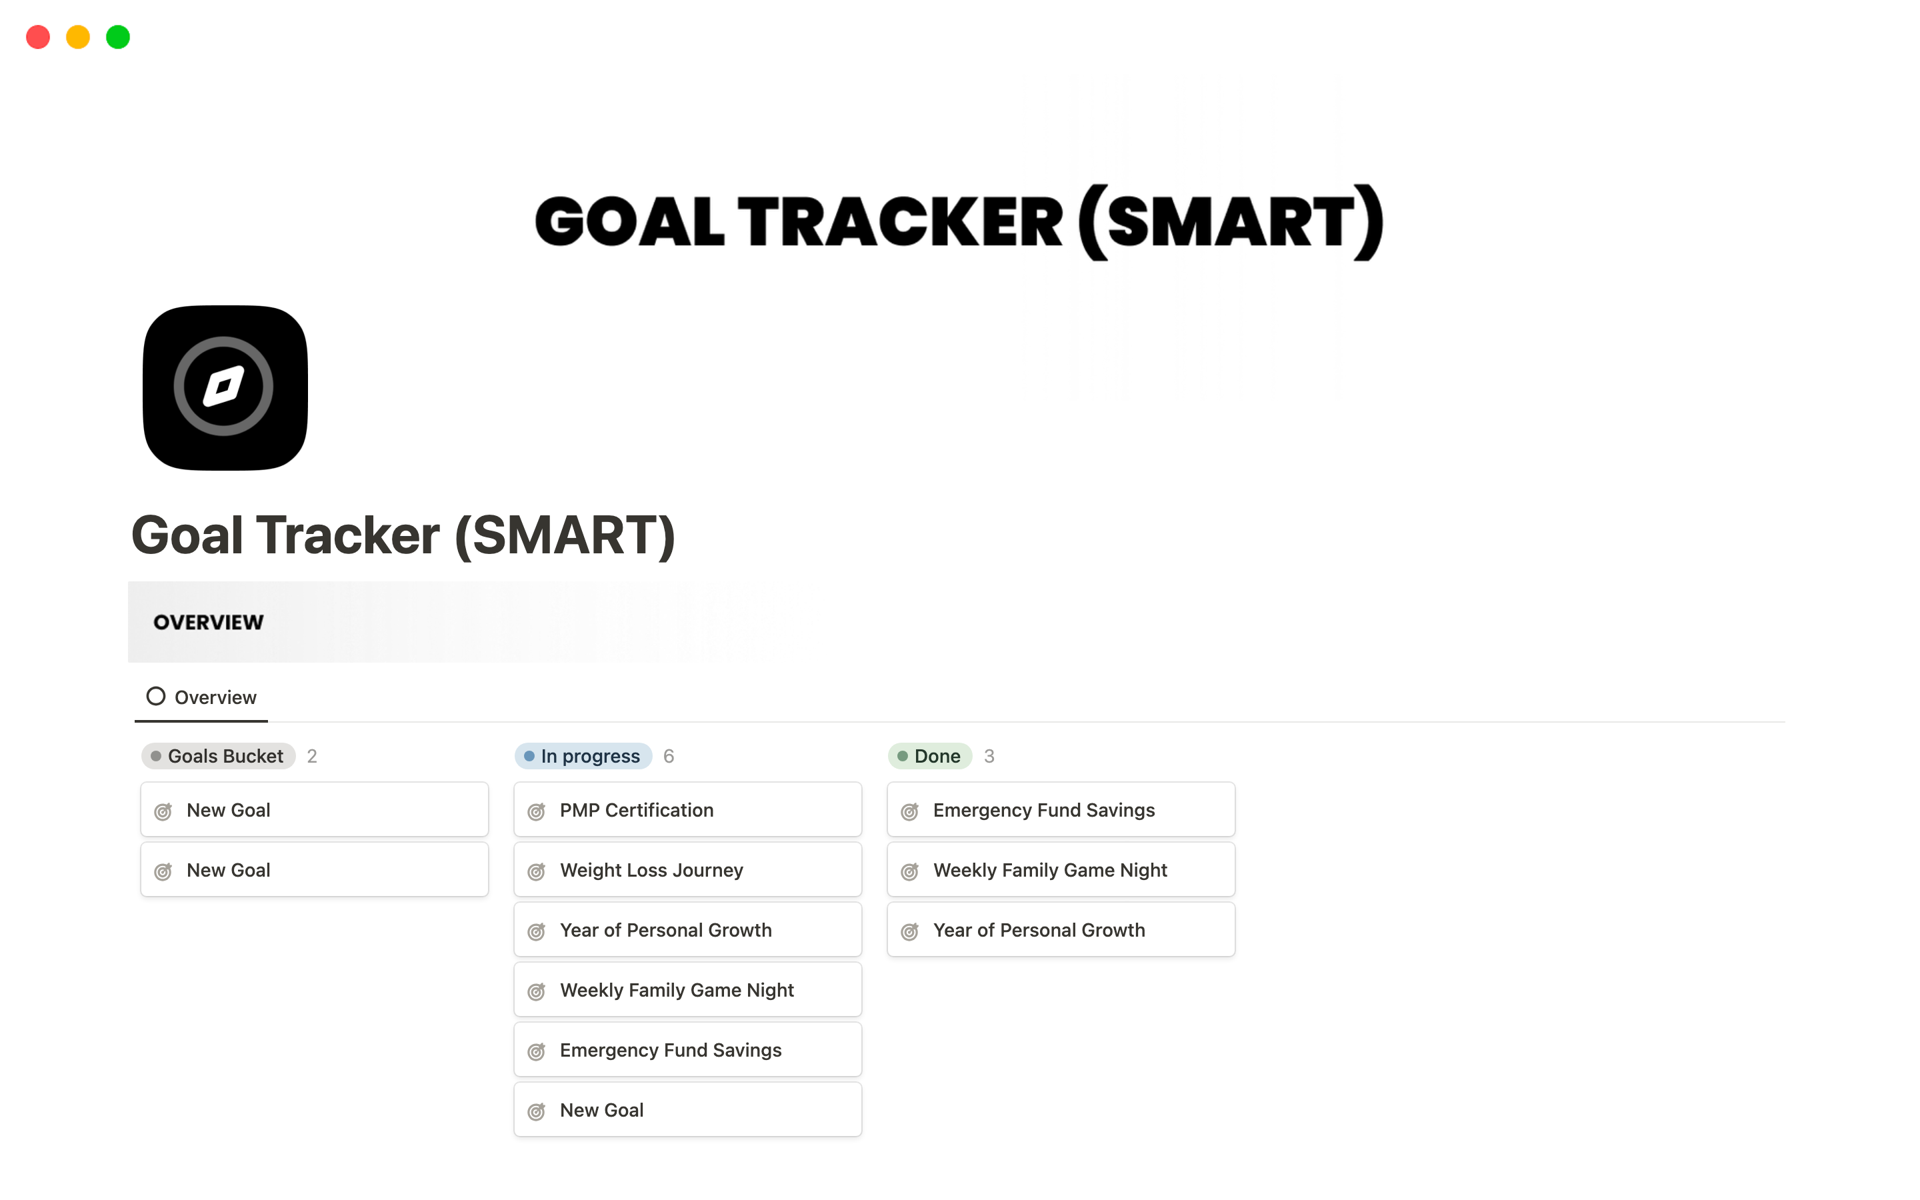 Vista previa de una plantilla para Goal Tracker (SMART)